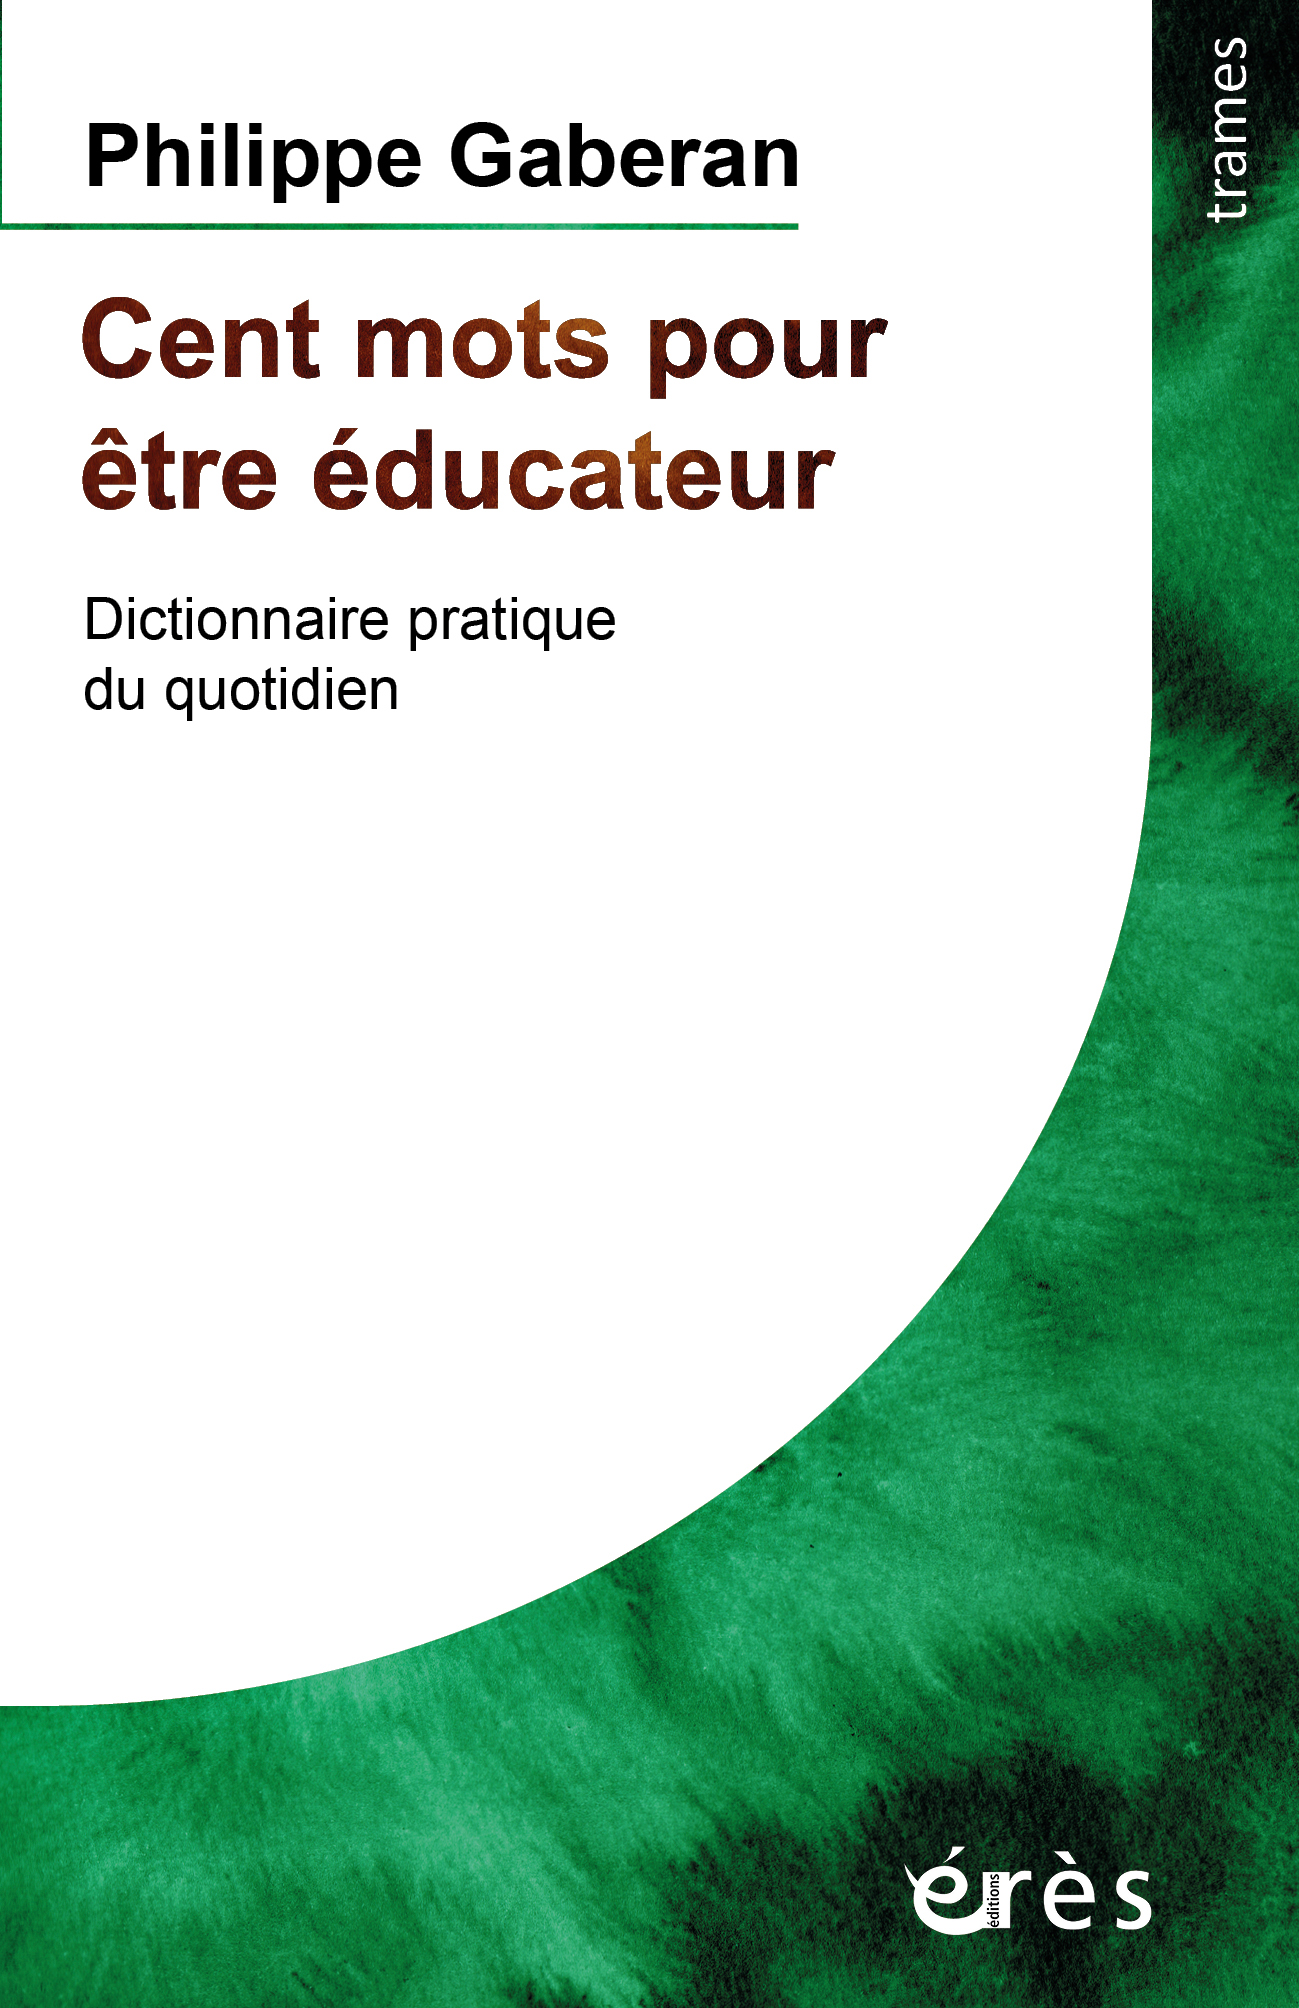 Dictionnaire de la pensée d'un éducateur - Jets d'Encre